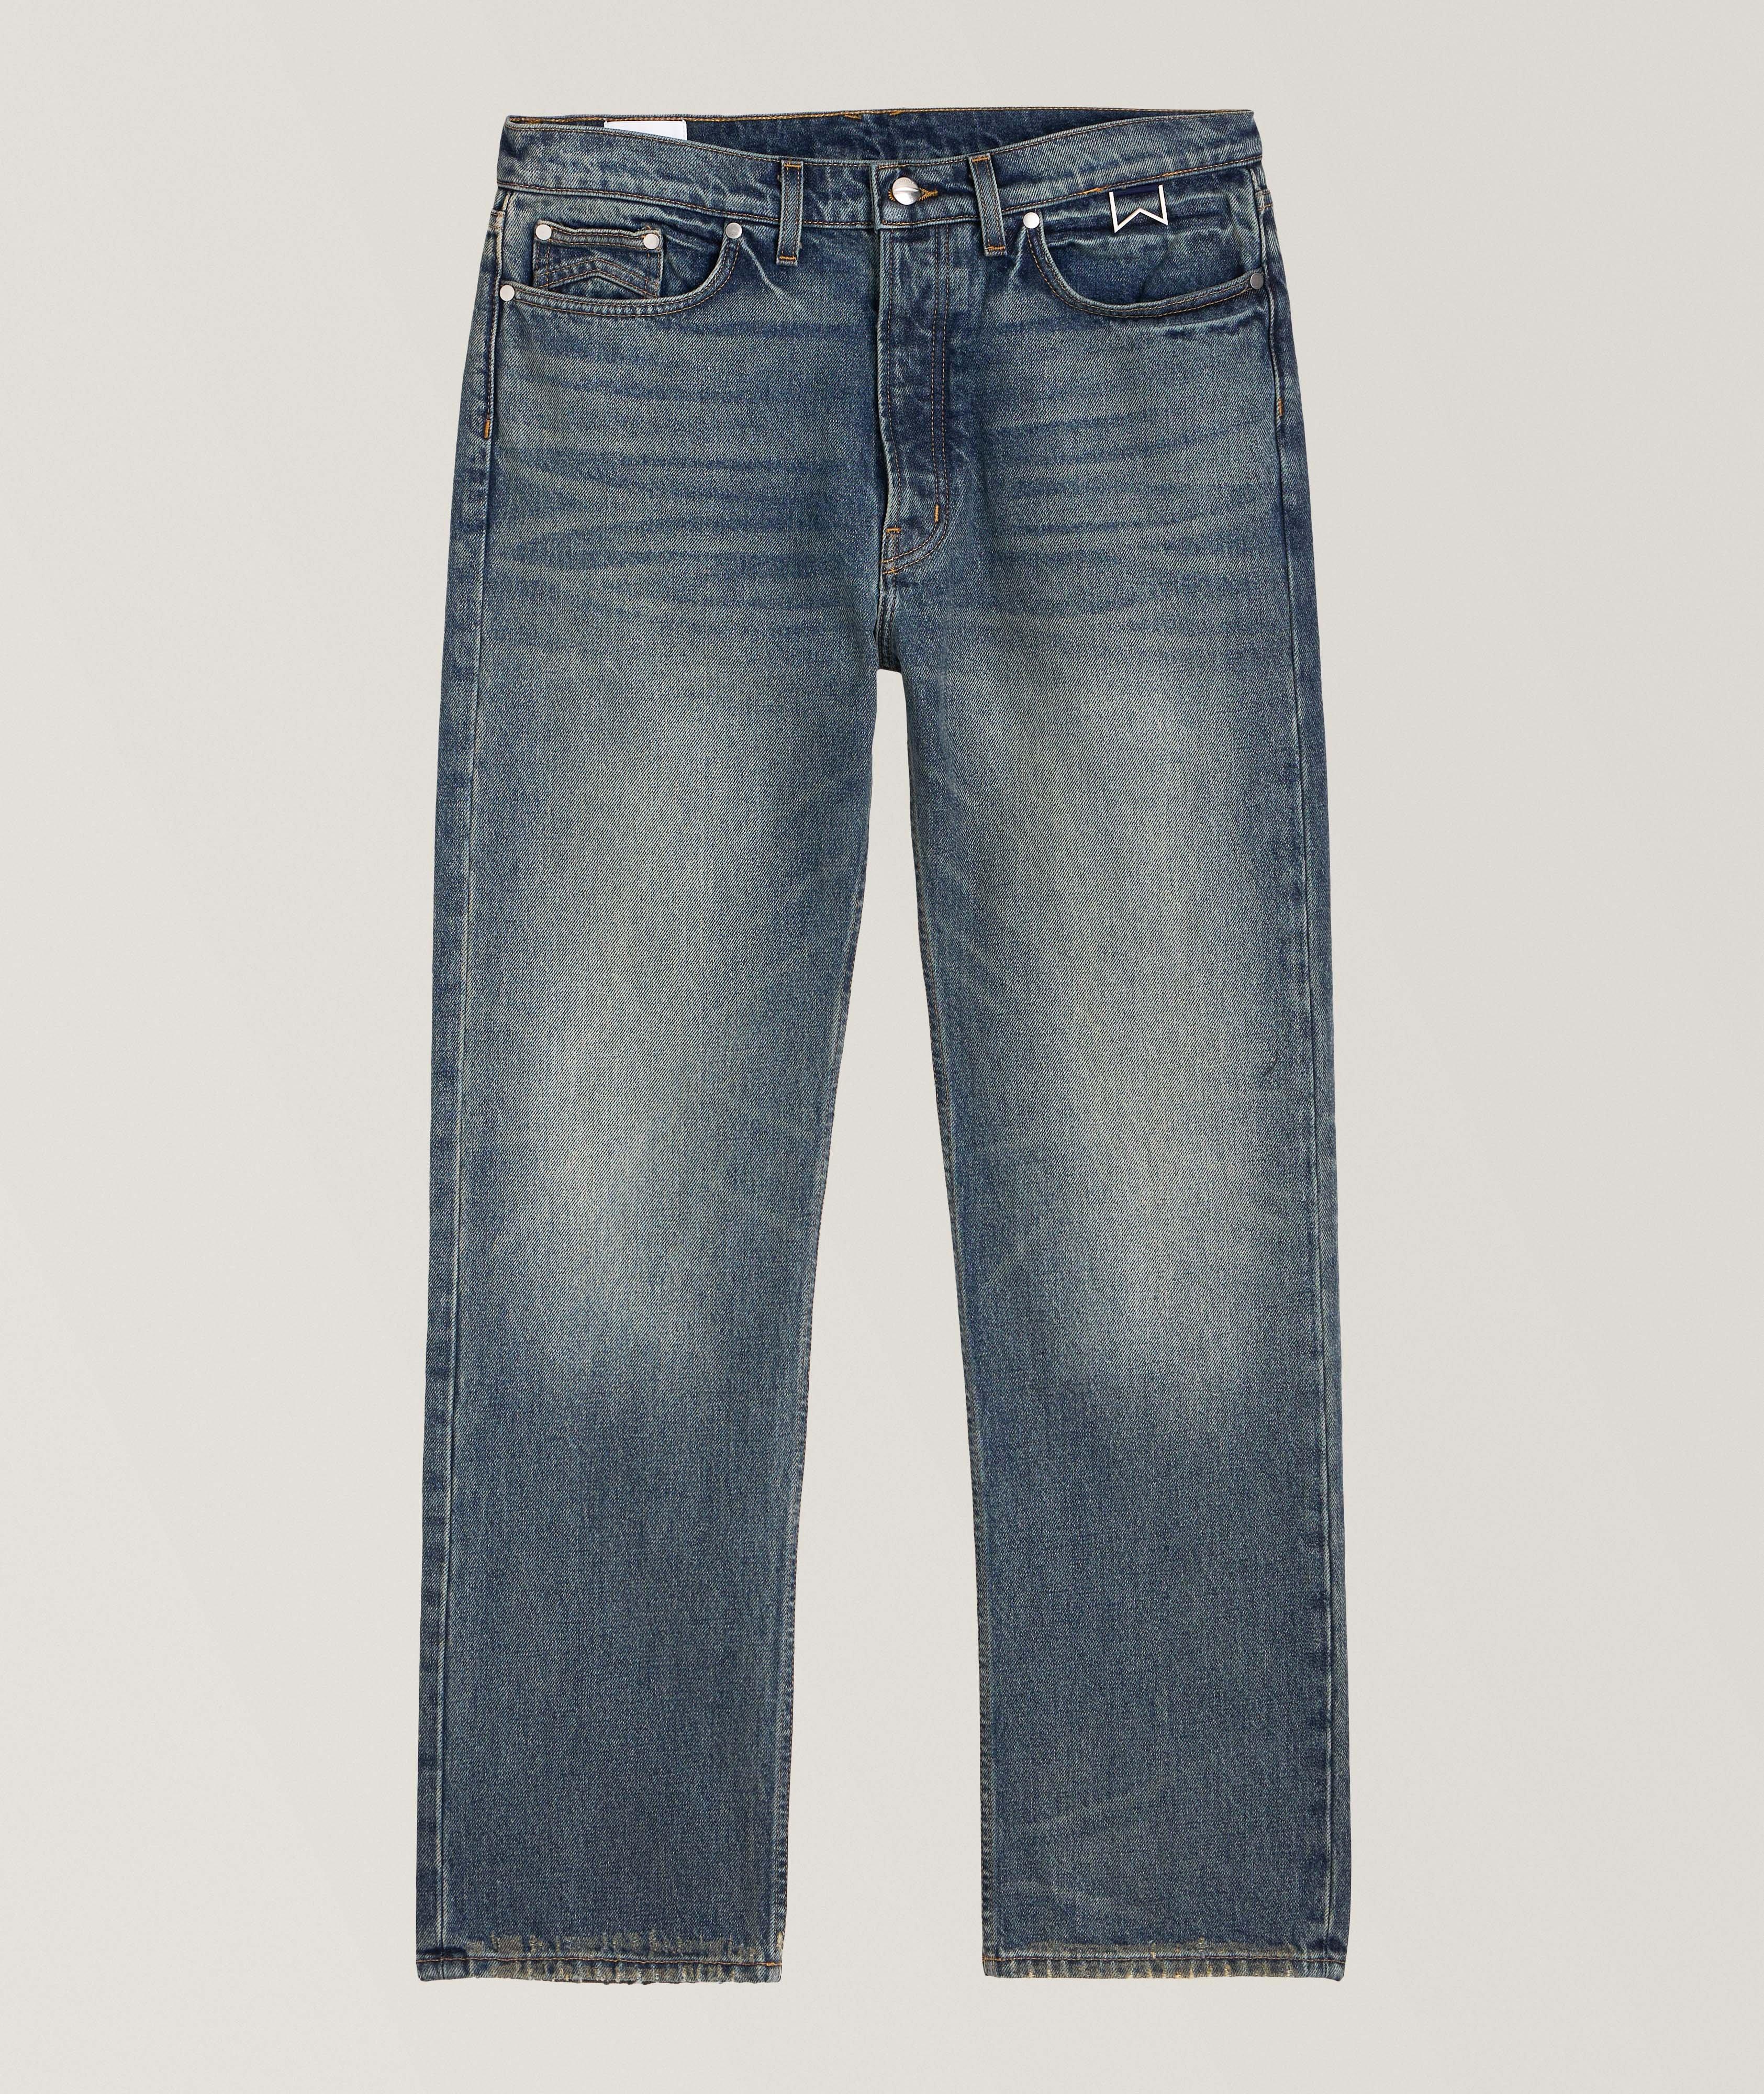 90's Cotton Jeans image 0